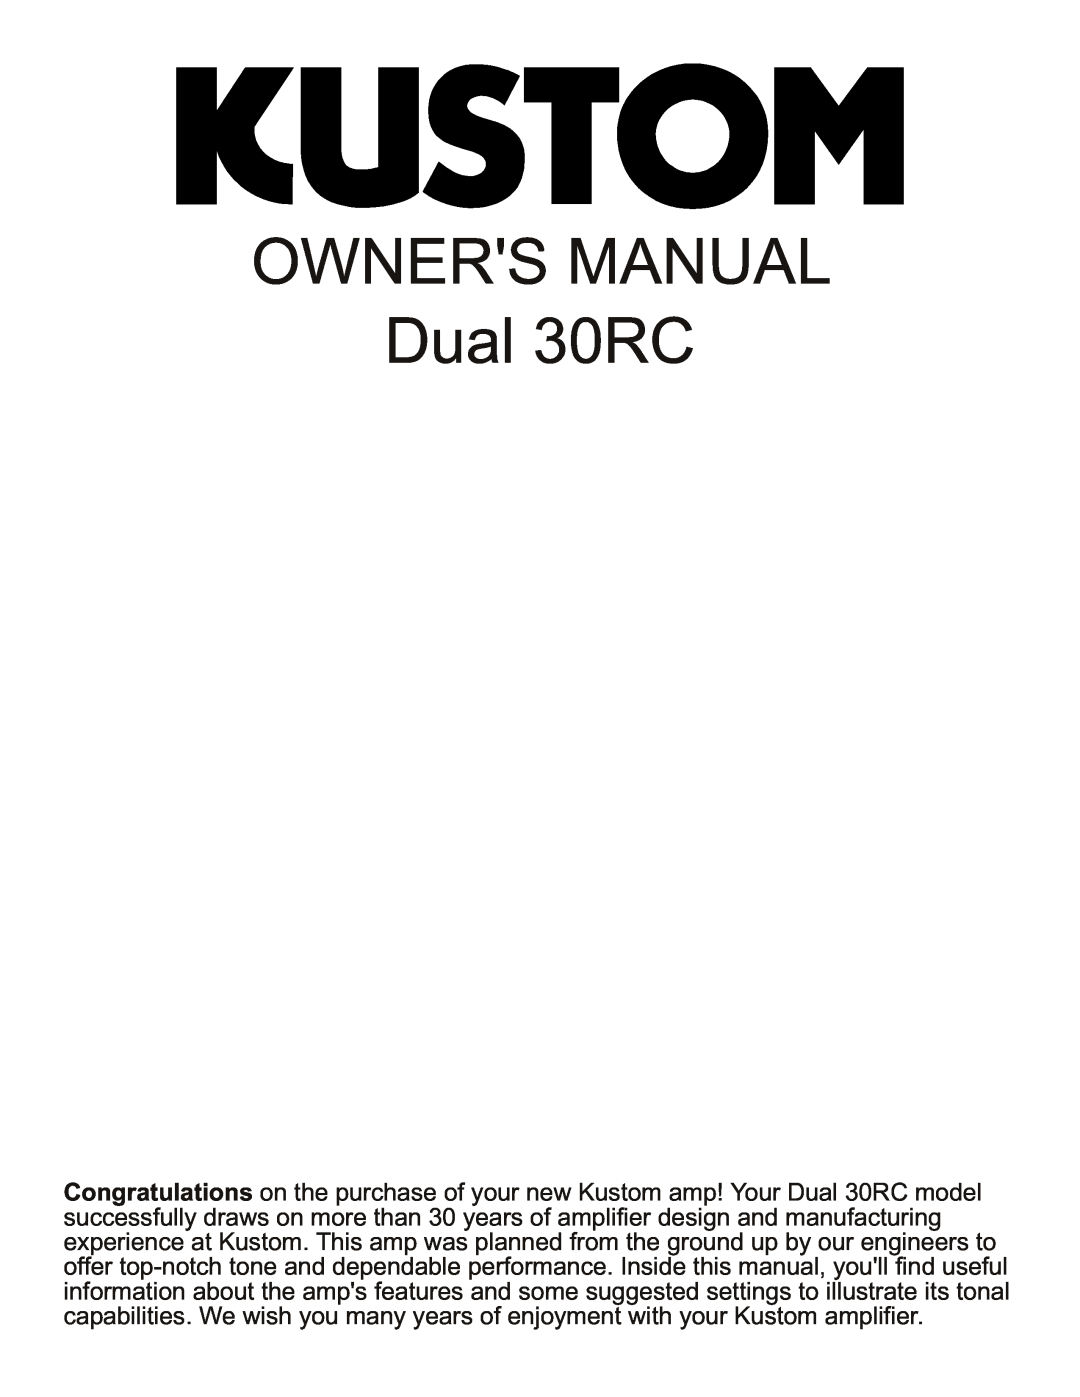 Kustom Dual 30 RC owner manual Dual 30RC 